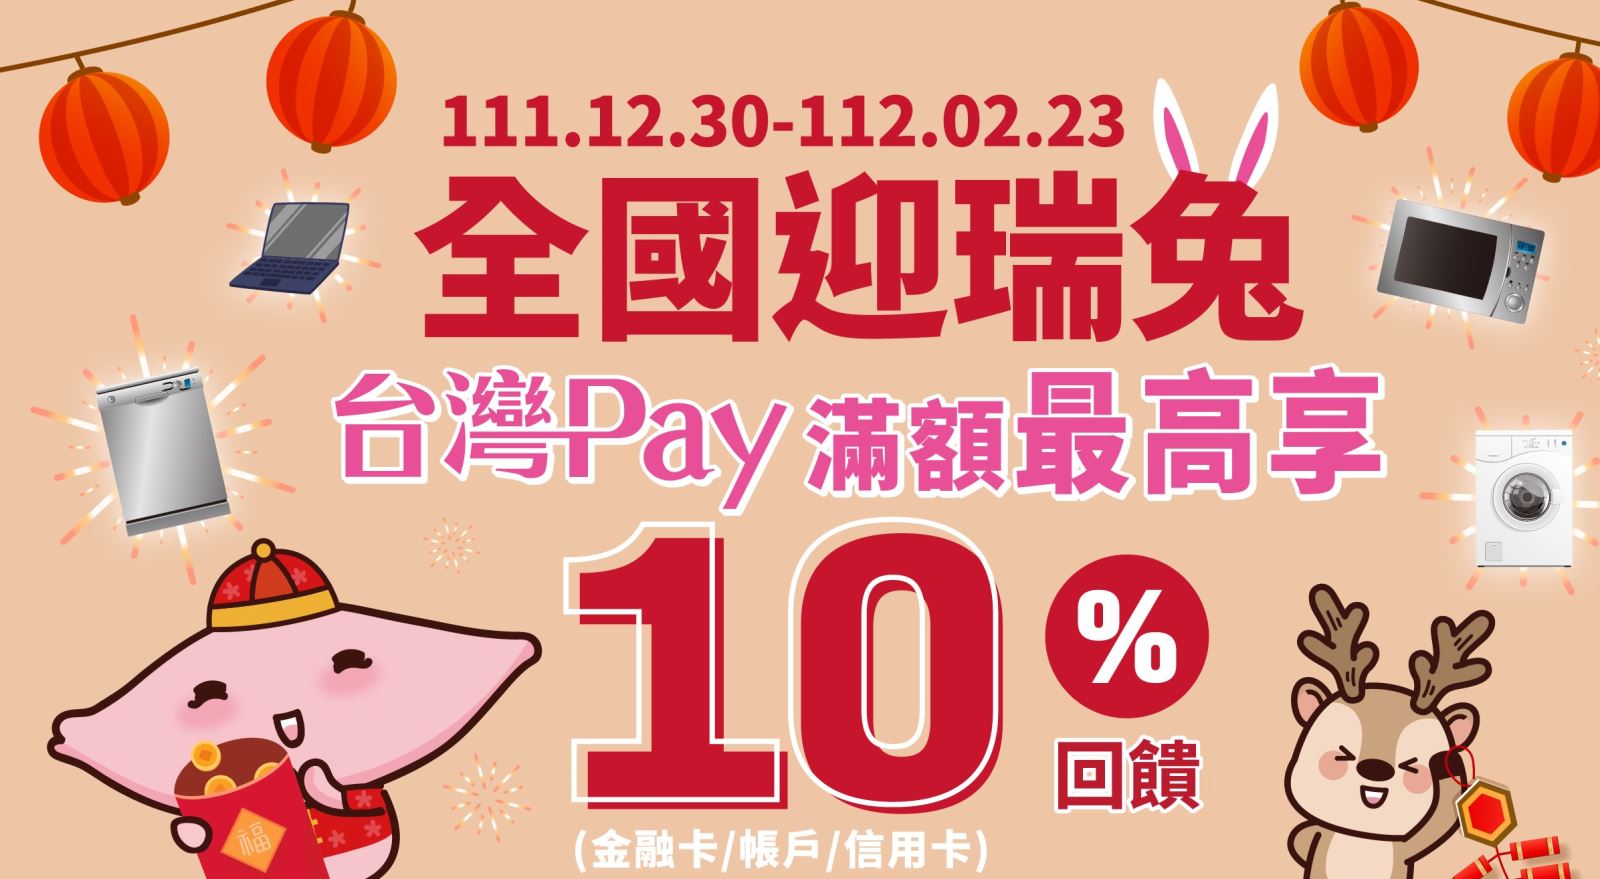 活動期間至活動地點消費，出示「台灣Pay」付款條碼進行支付，單筆消費滿新臺幣(以下同)5,000元(含)以上，即回饋500元「全國電子」折價券